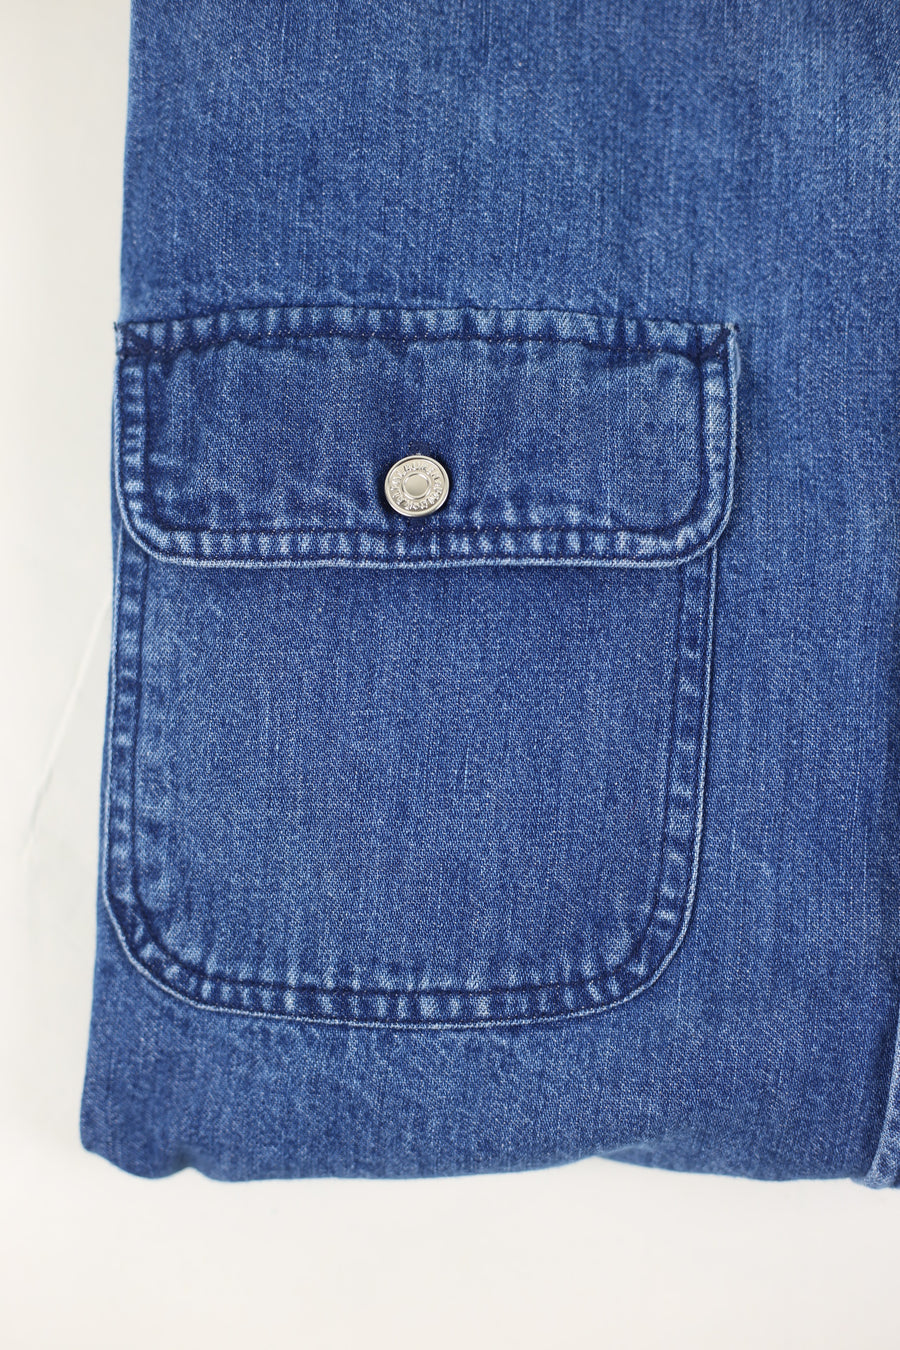 Camicia di jeans  vintage RL  - M -